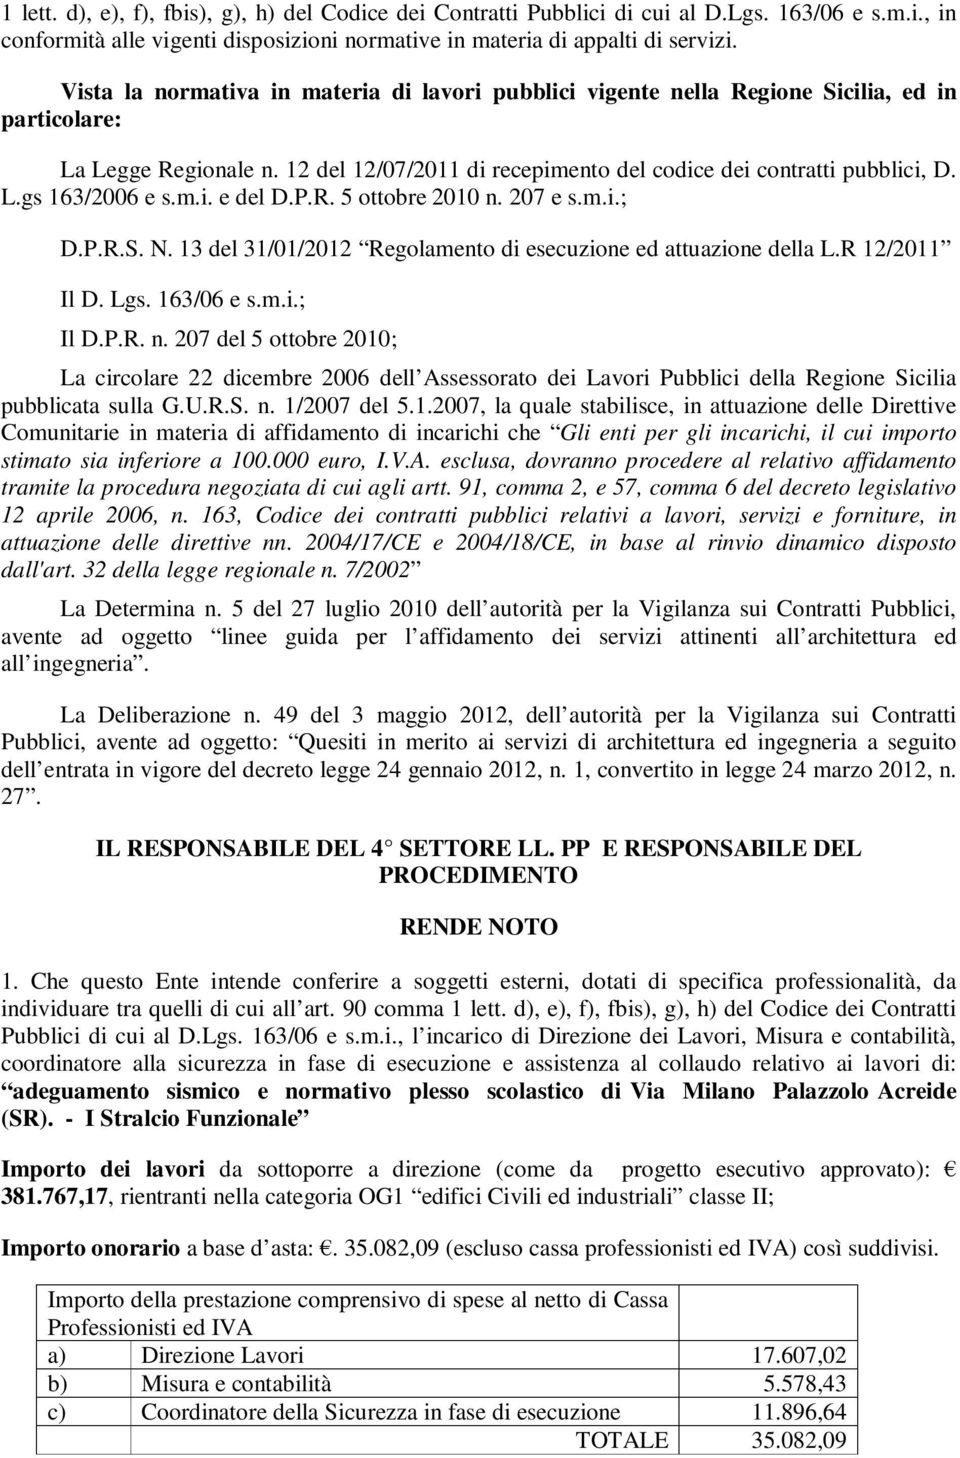 m.i. e del D.P.R. 5 ottobre 2010 n. 207 e s.m.i.; D.P.R.S. N. 13 del 31/01/2012 Regolamento di esecuzione ed attuazione della L.R 12/2011 Il D. Lgs. 163/06 e s.m.i.; Il D.P.R. n. 207 del 5 ottobre 2010; La circolare 22 dicembre 2006 dell Assessorato dei Lavori Pubblici della Regione Sicilia pubblicata sulla G.